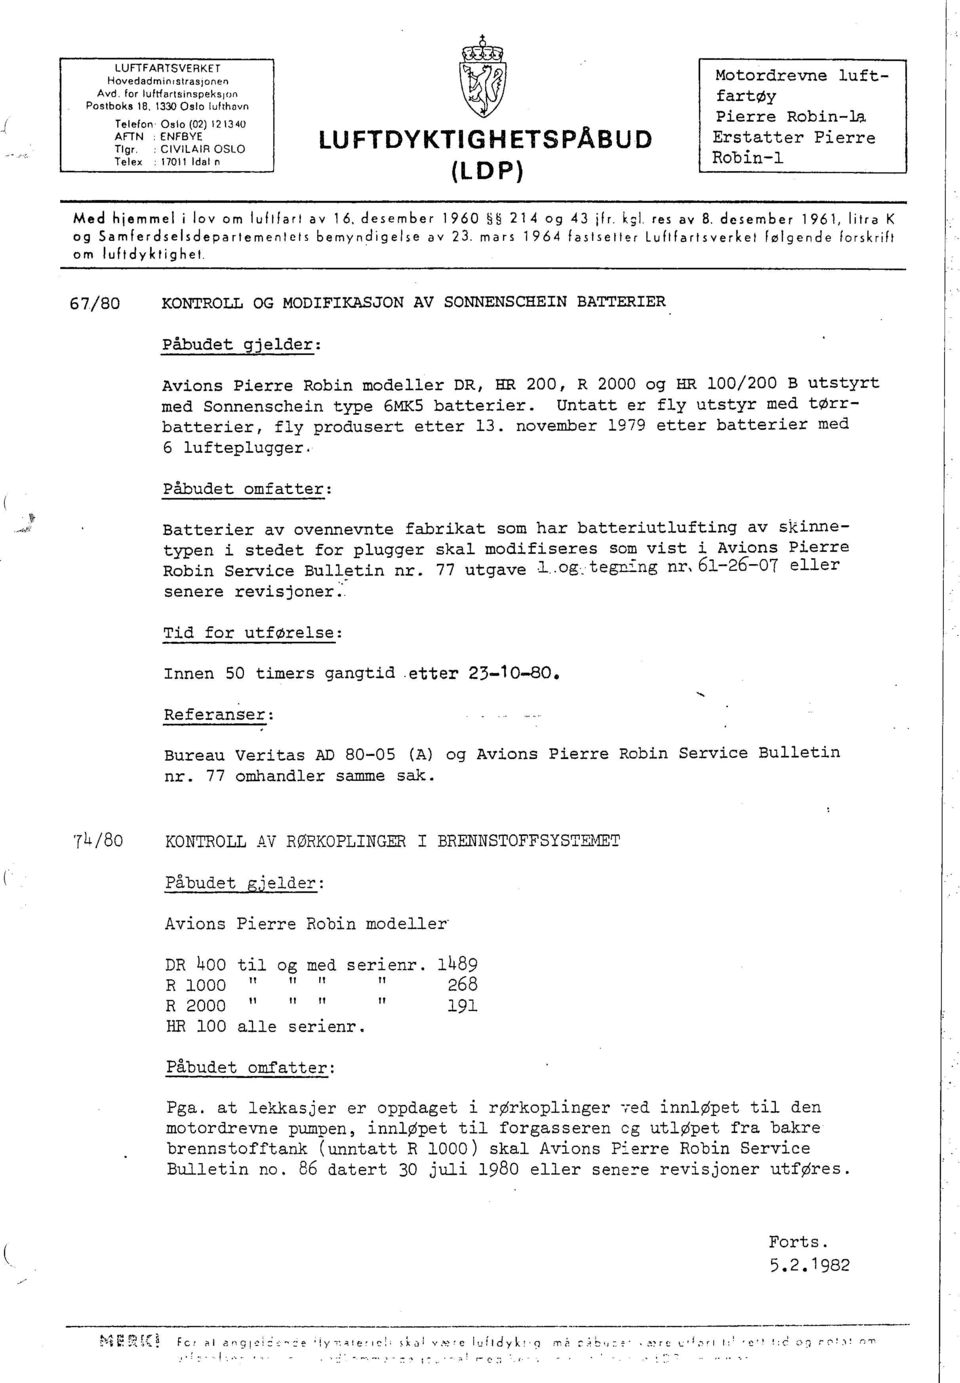 kgl. res av B. desember 1961, litra K og Samferdselsdepartementets bemyndigelse av 23. mars 1964 fastsetter Luftfartsverket følgende forskrift om luftdyktighet.